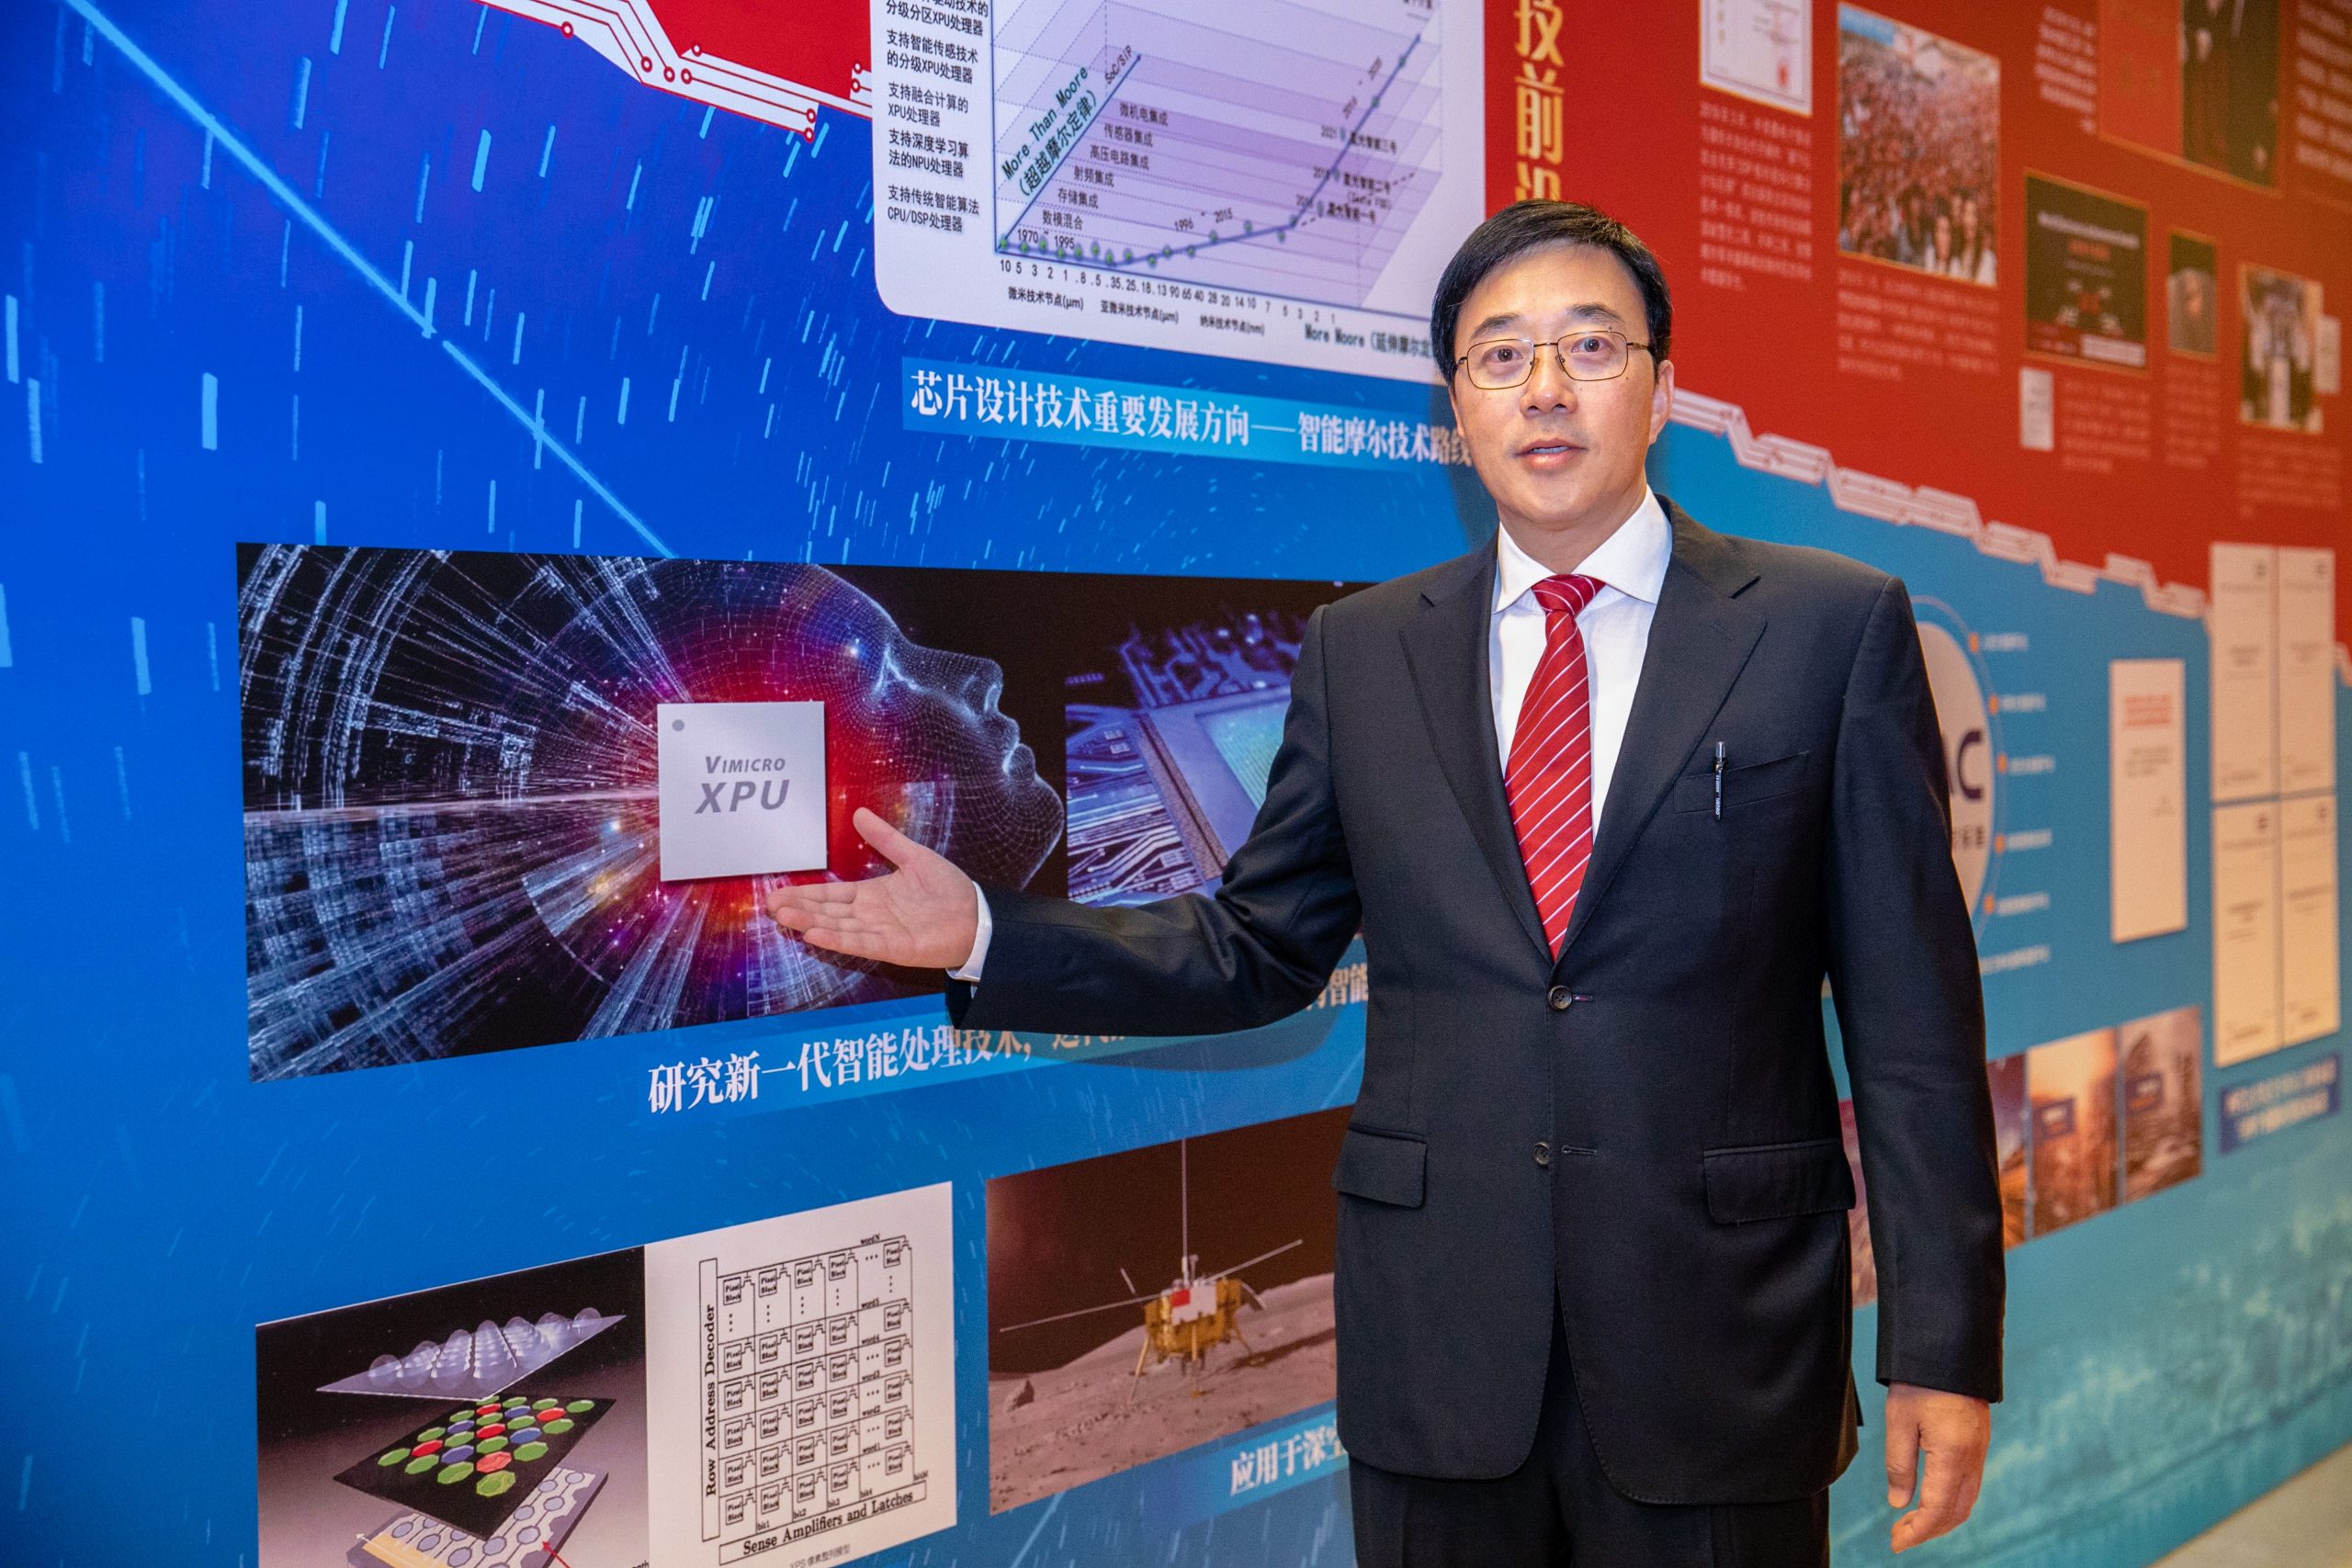 二十载自主创新星光梦 新时代中国芯片再启程